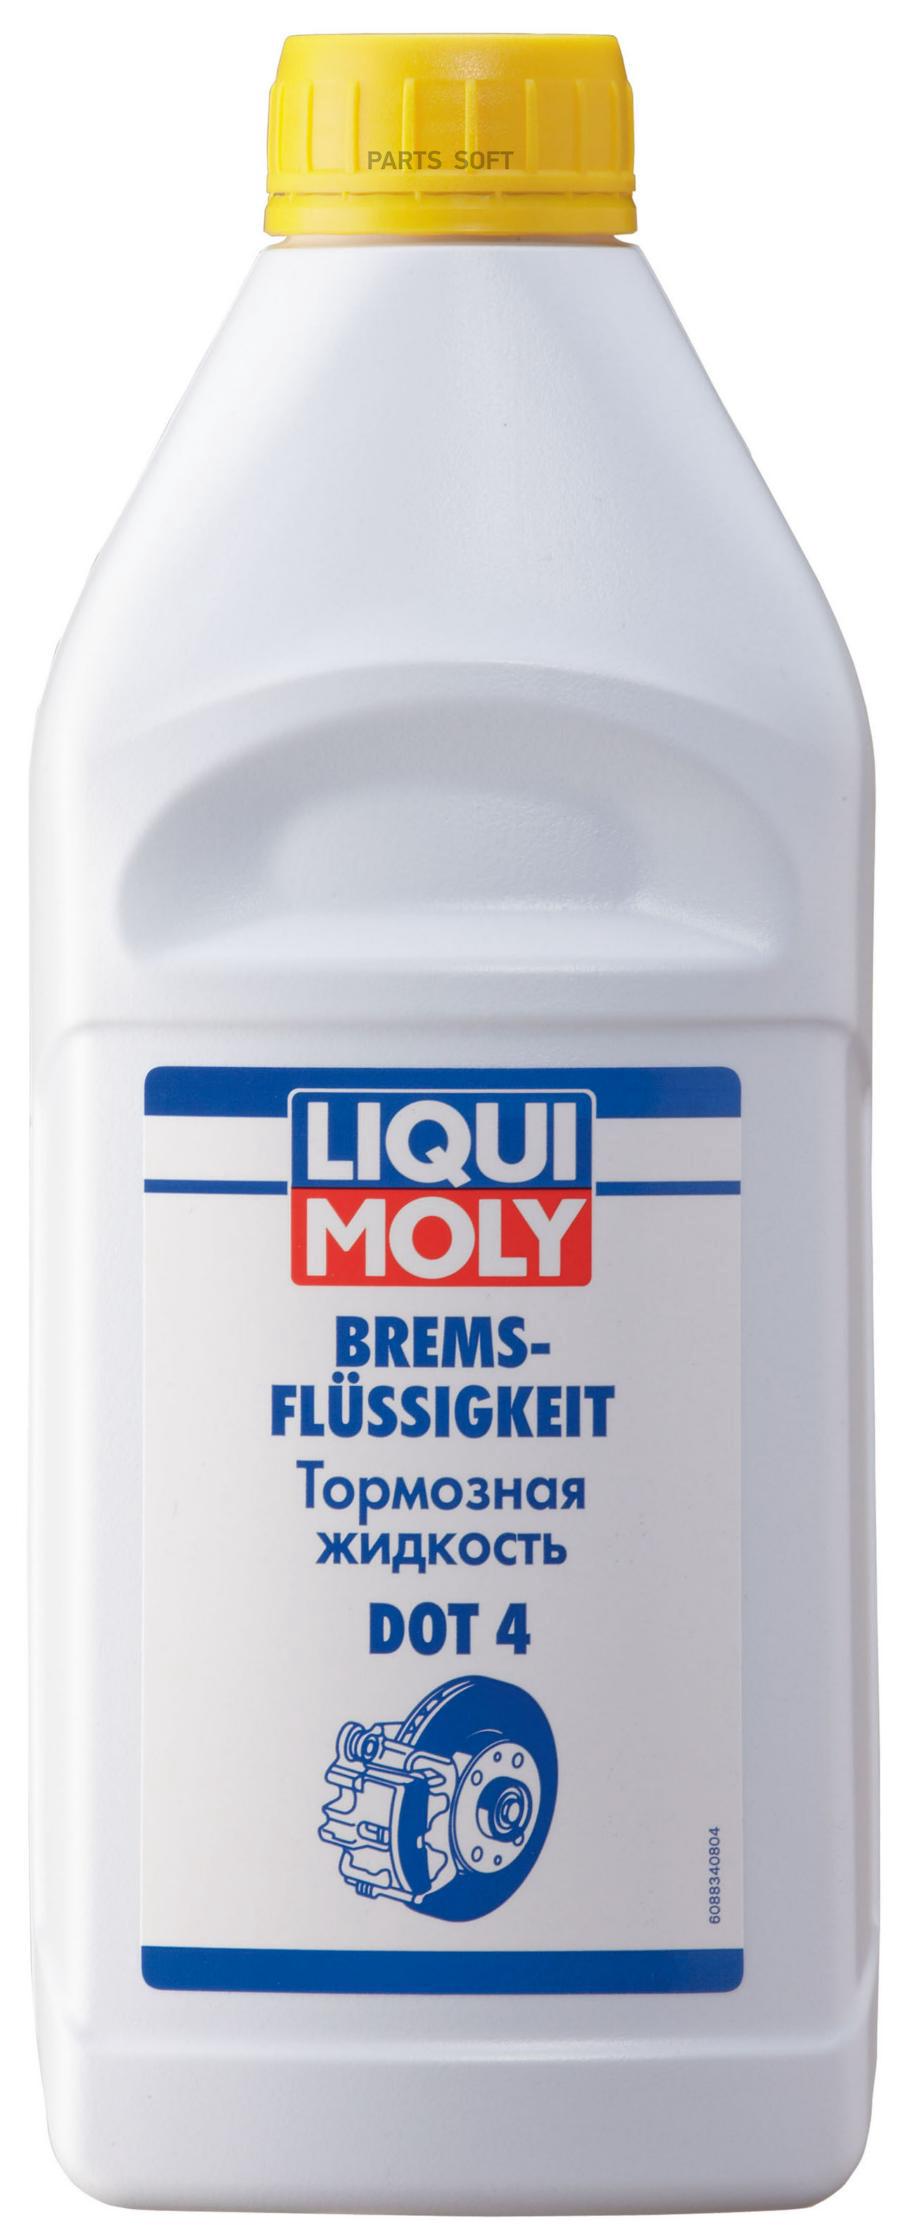 Жидкость Тормозная Bremsenflussigkeit Dot-4  1l Liqui moly арт. 8834